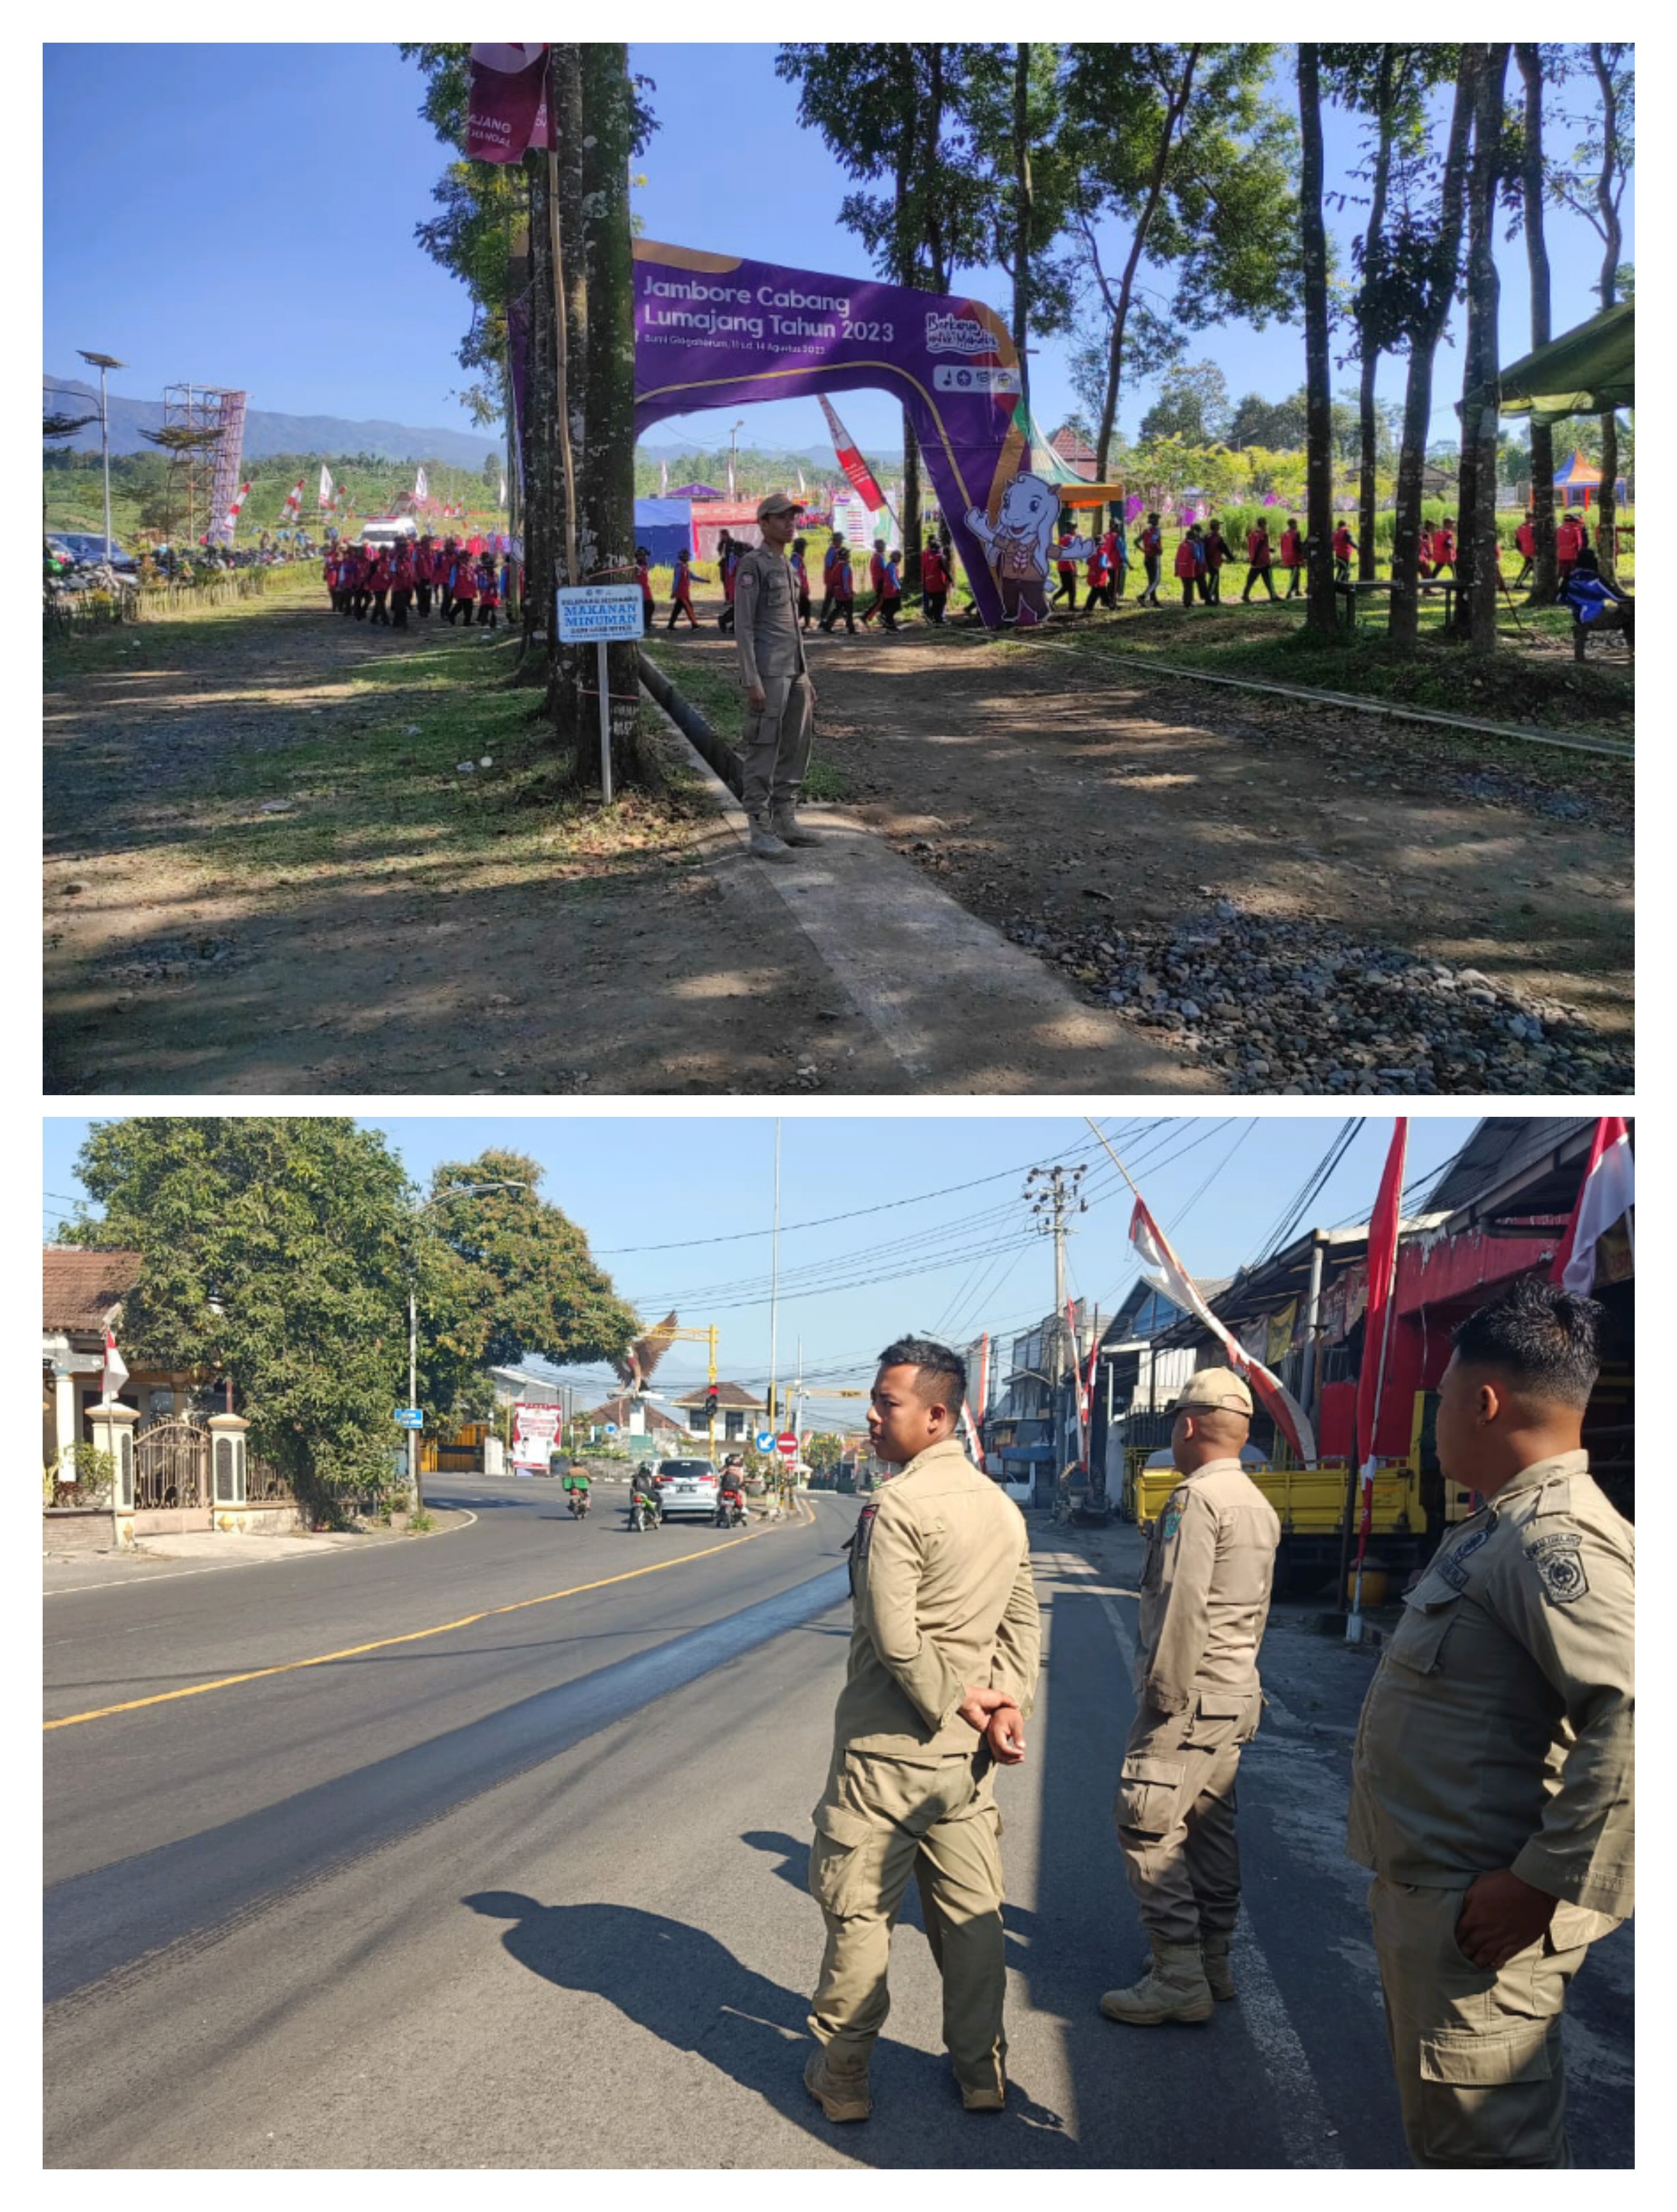 Pengamanan Acara Jambore Cabang Lumajang Tahun 2023 di Buper Glagah Arum dan Patroli Wilayah Kota Lumajang 